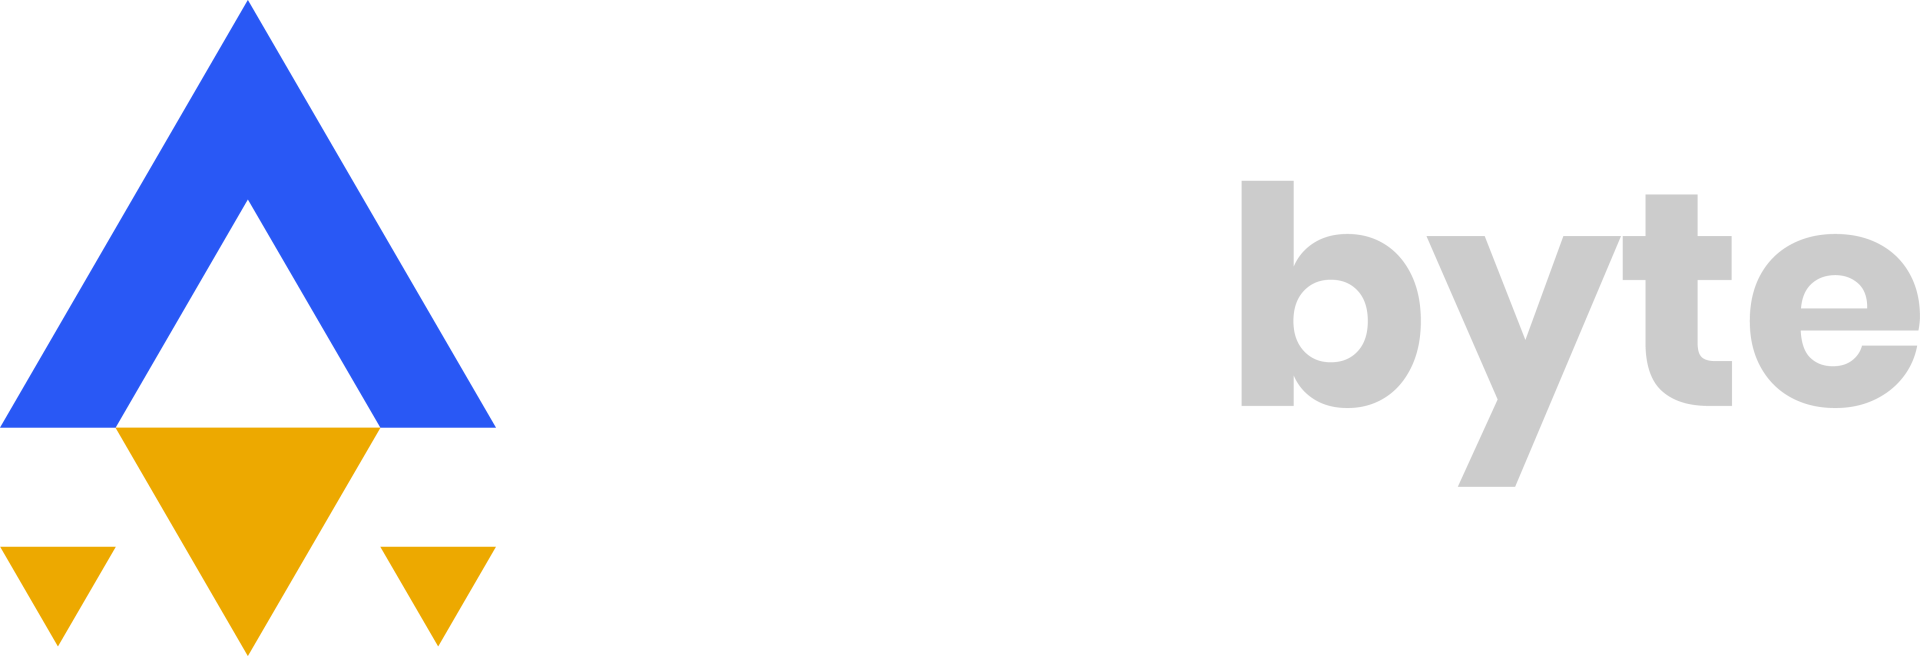 www.pilotbyte.com